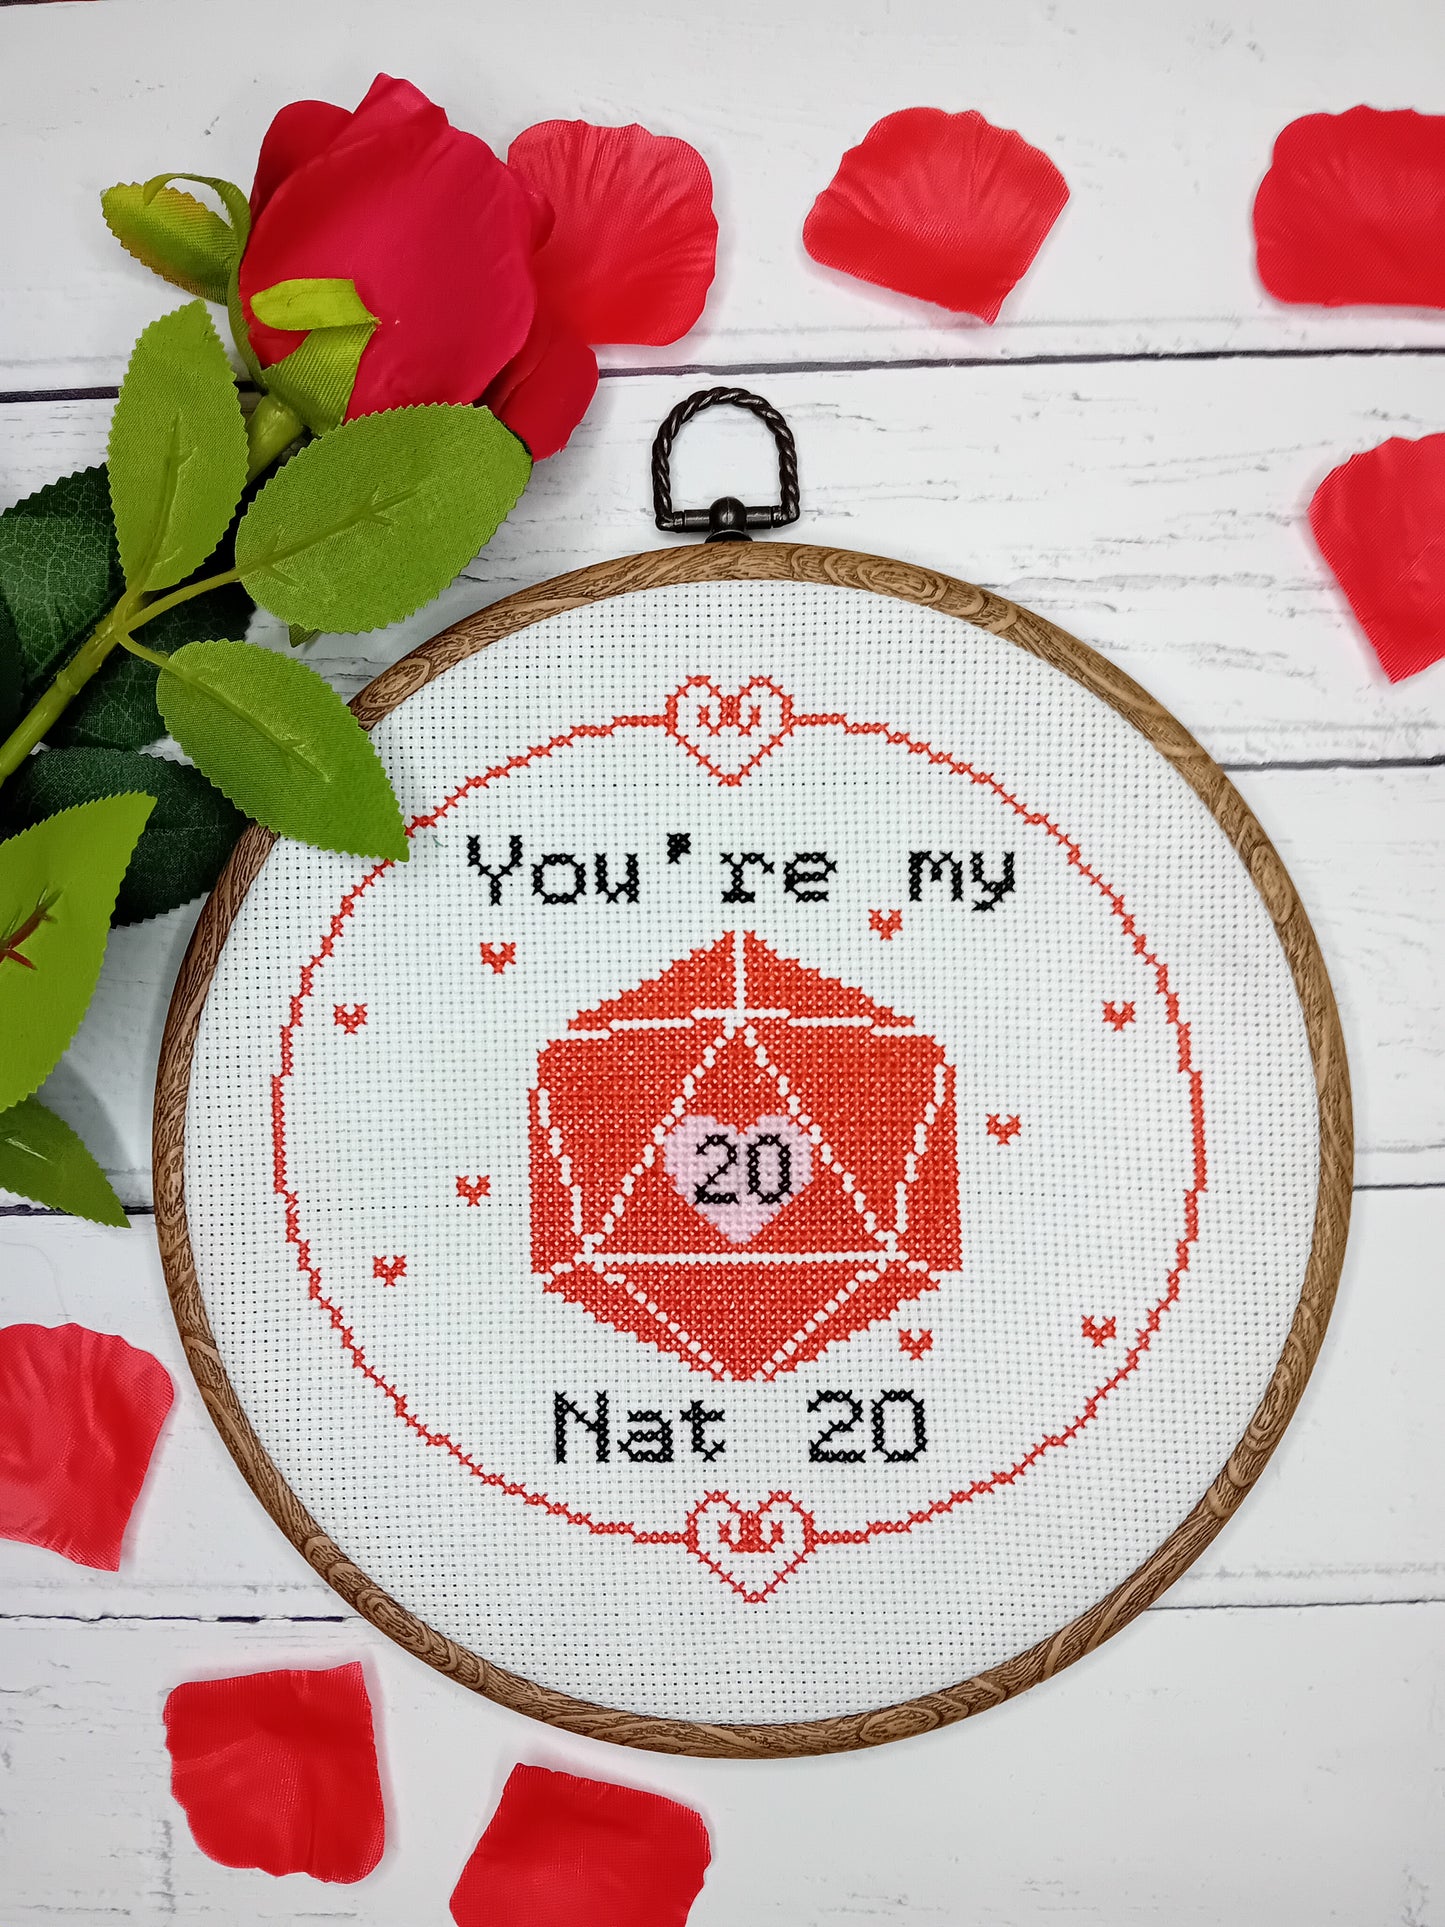 You're my Nat 20 - Nerdy themed Valentine's Cross Stitch - Cross Stitch Pattern - Tabletop game themed